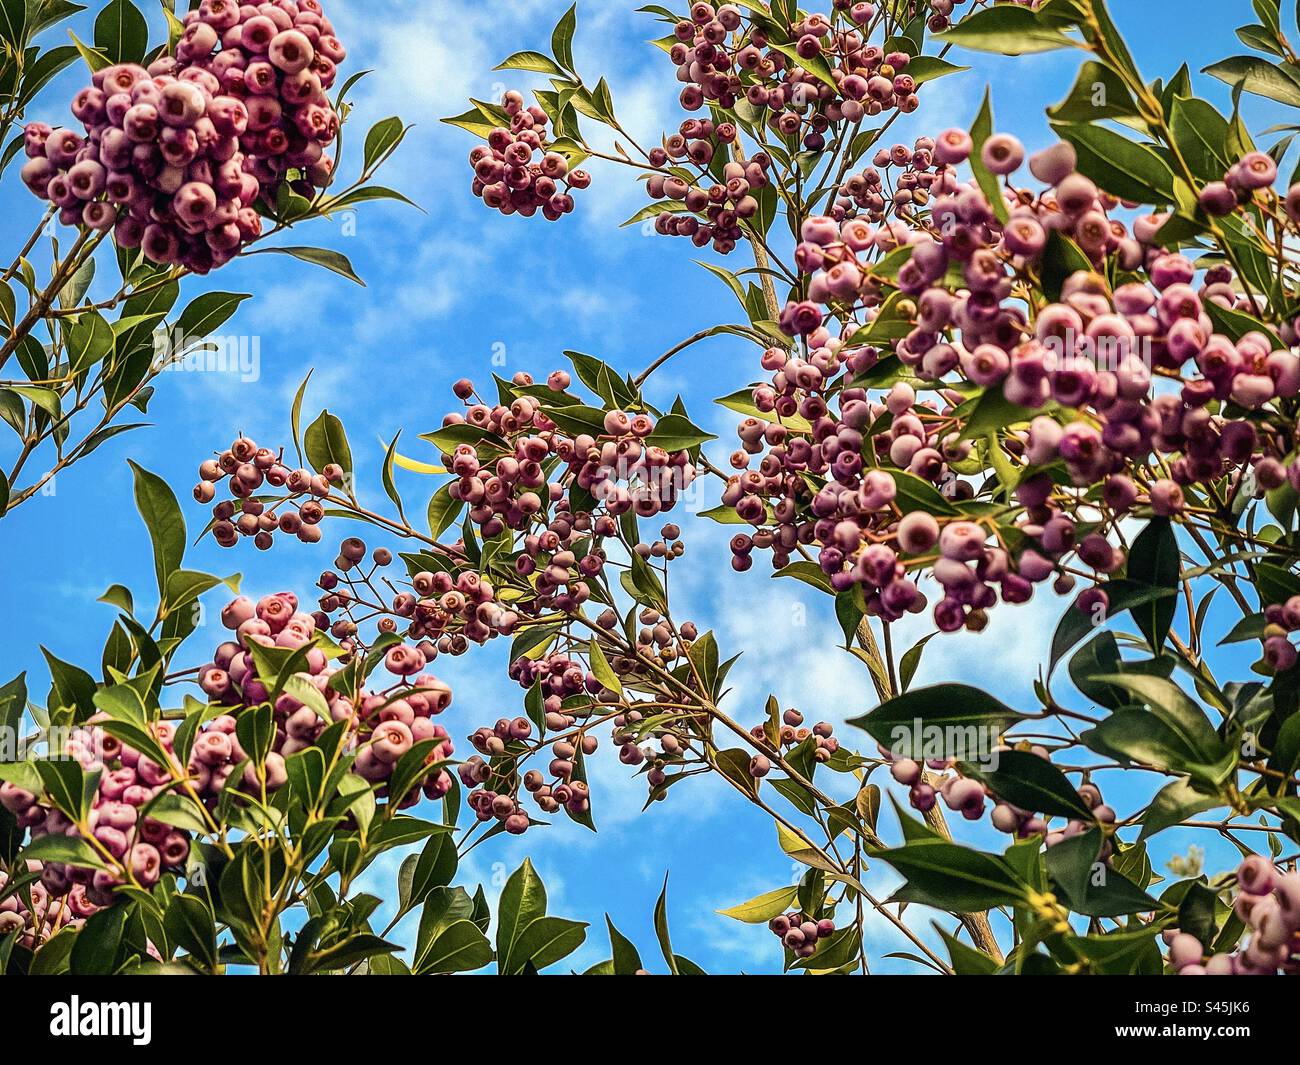 Vista dall'angolo basso delle bacche pilly di lilly commestibili di arbusto Syzygium smithii, una pianta australiana autoctona sempreverde, contro il cielo blu con le nuvole. Cibo e cucina tradizionale. Bacca medicinale. Foto Stock